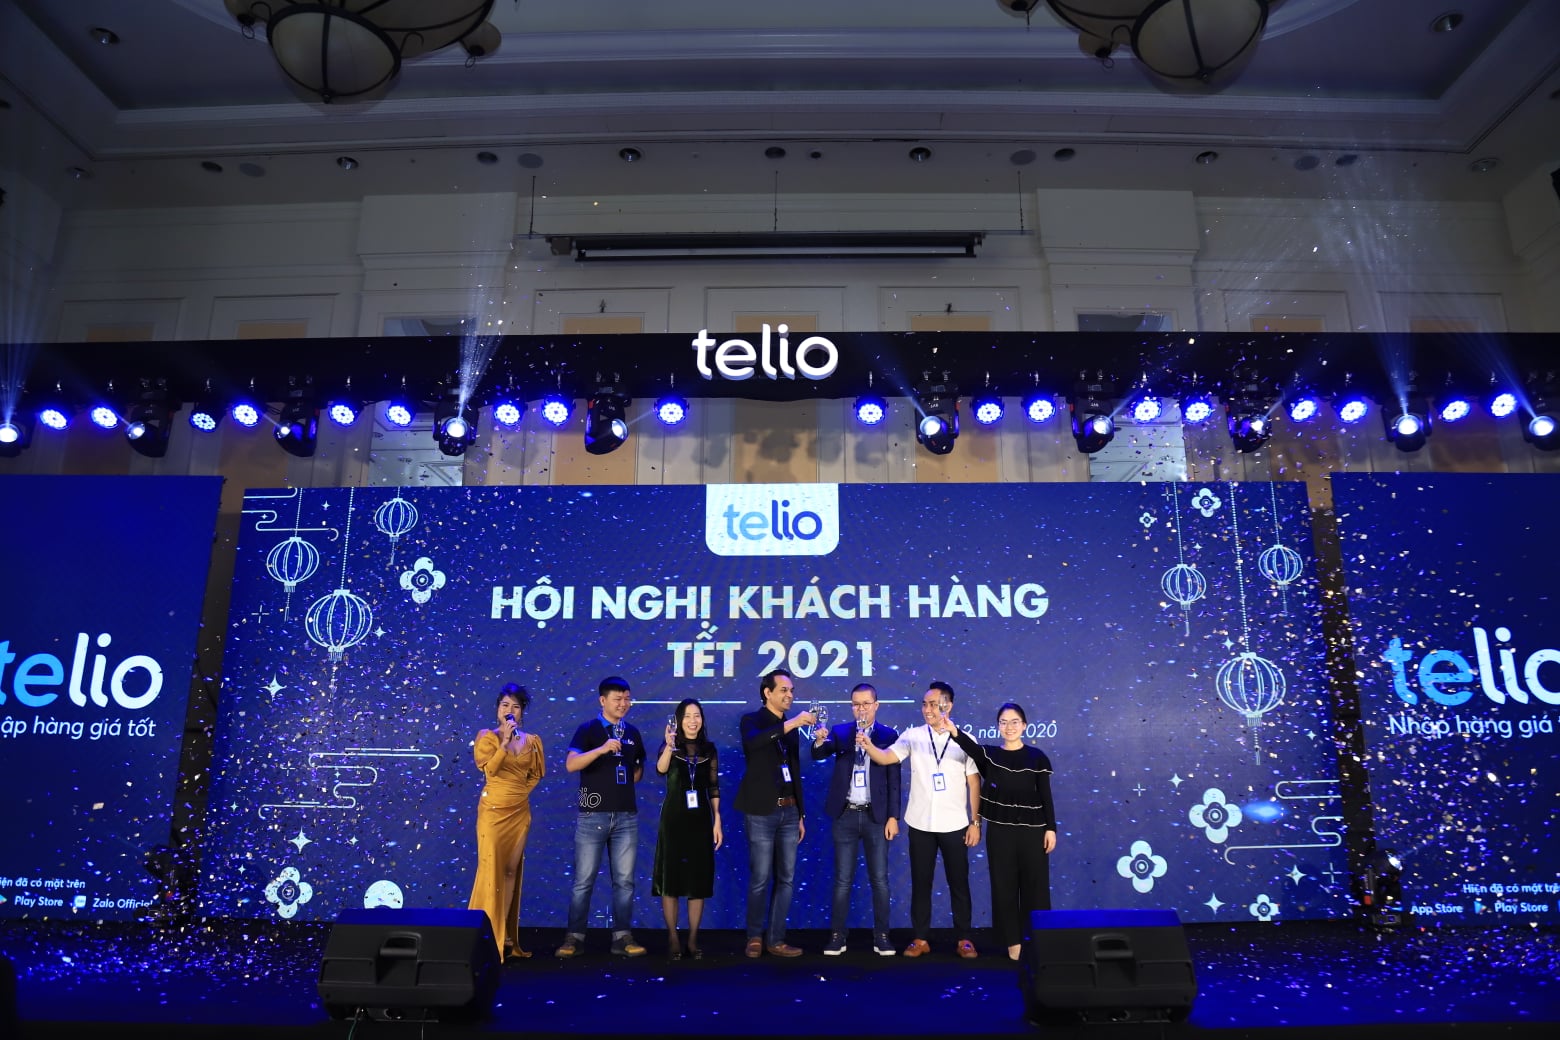 Viet Green Media, Cho thuê nhóm nhảy Led tại Hà Nội, cho thuê nhóm nhảy đèn Led tại Hà Nội, Sự Kiện Xanh